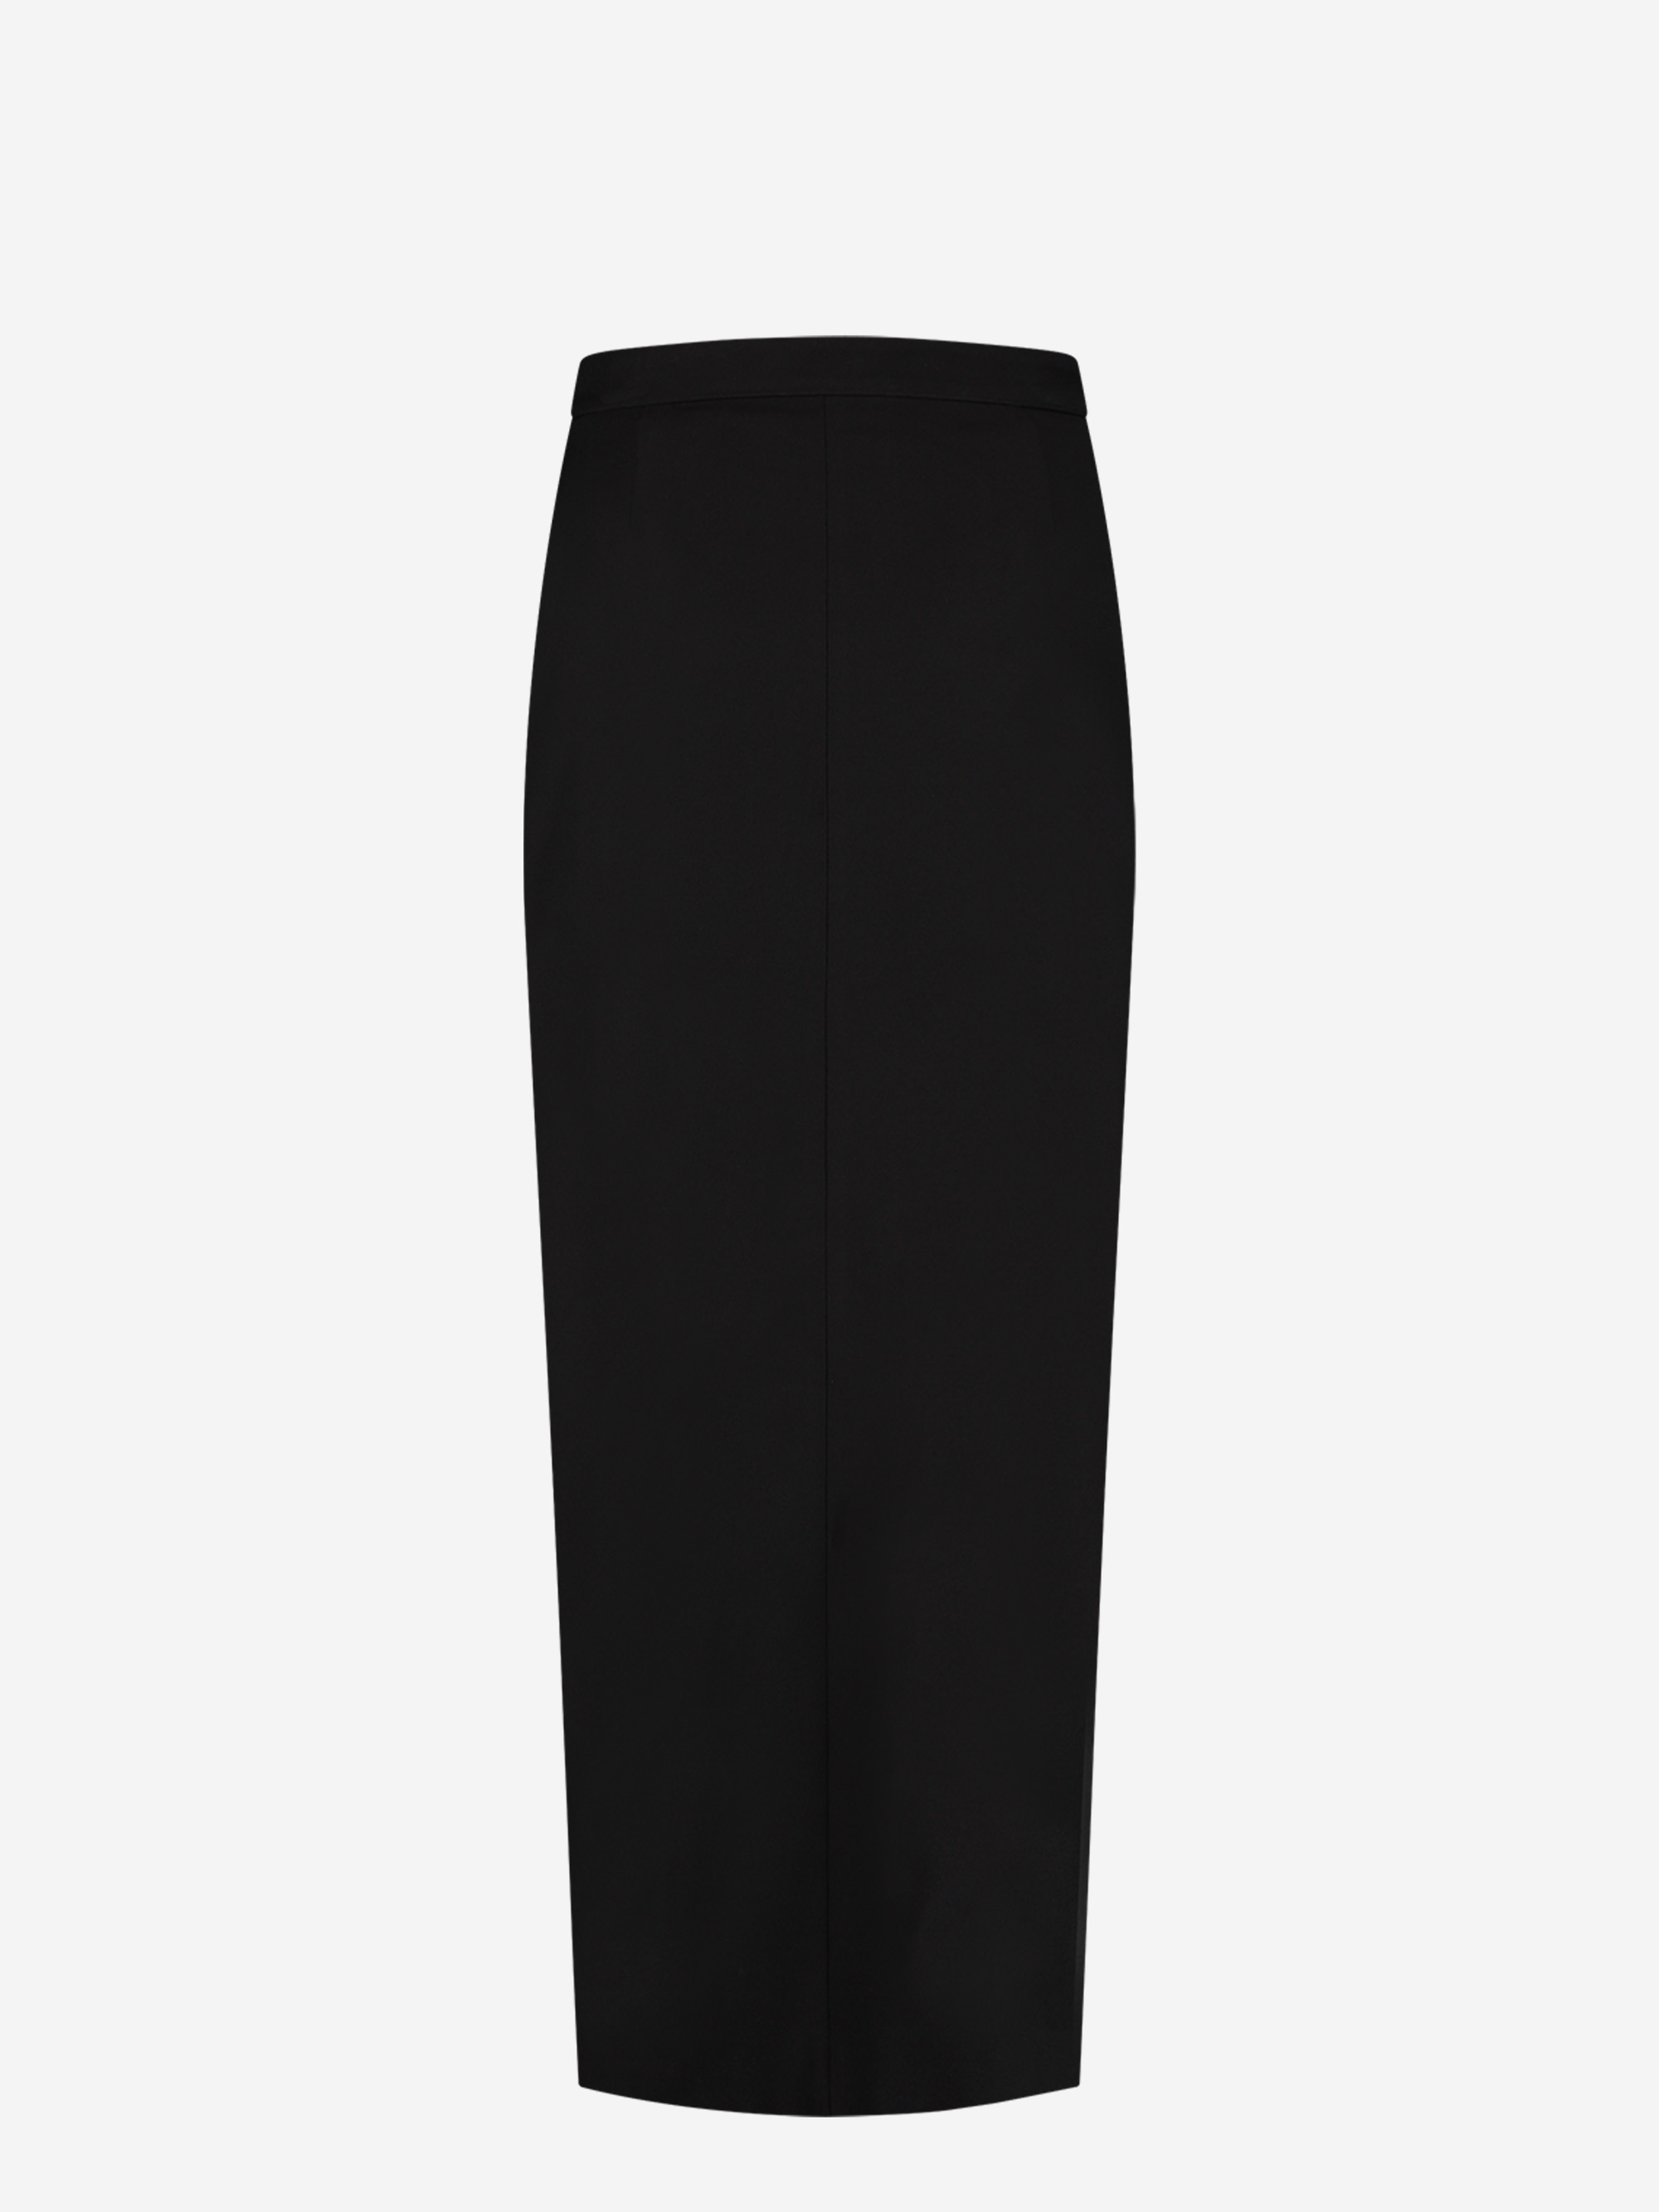 Long skirt with zipper detail